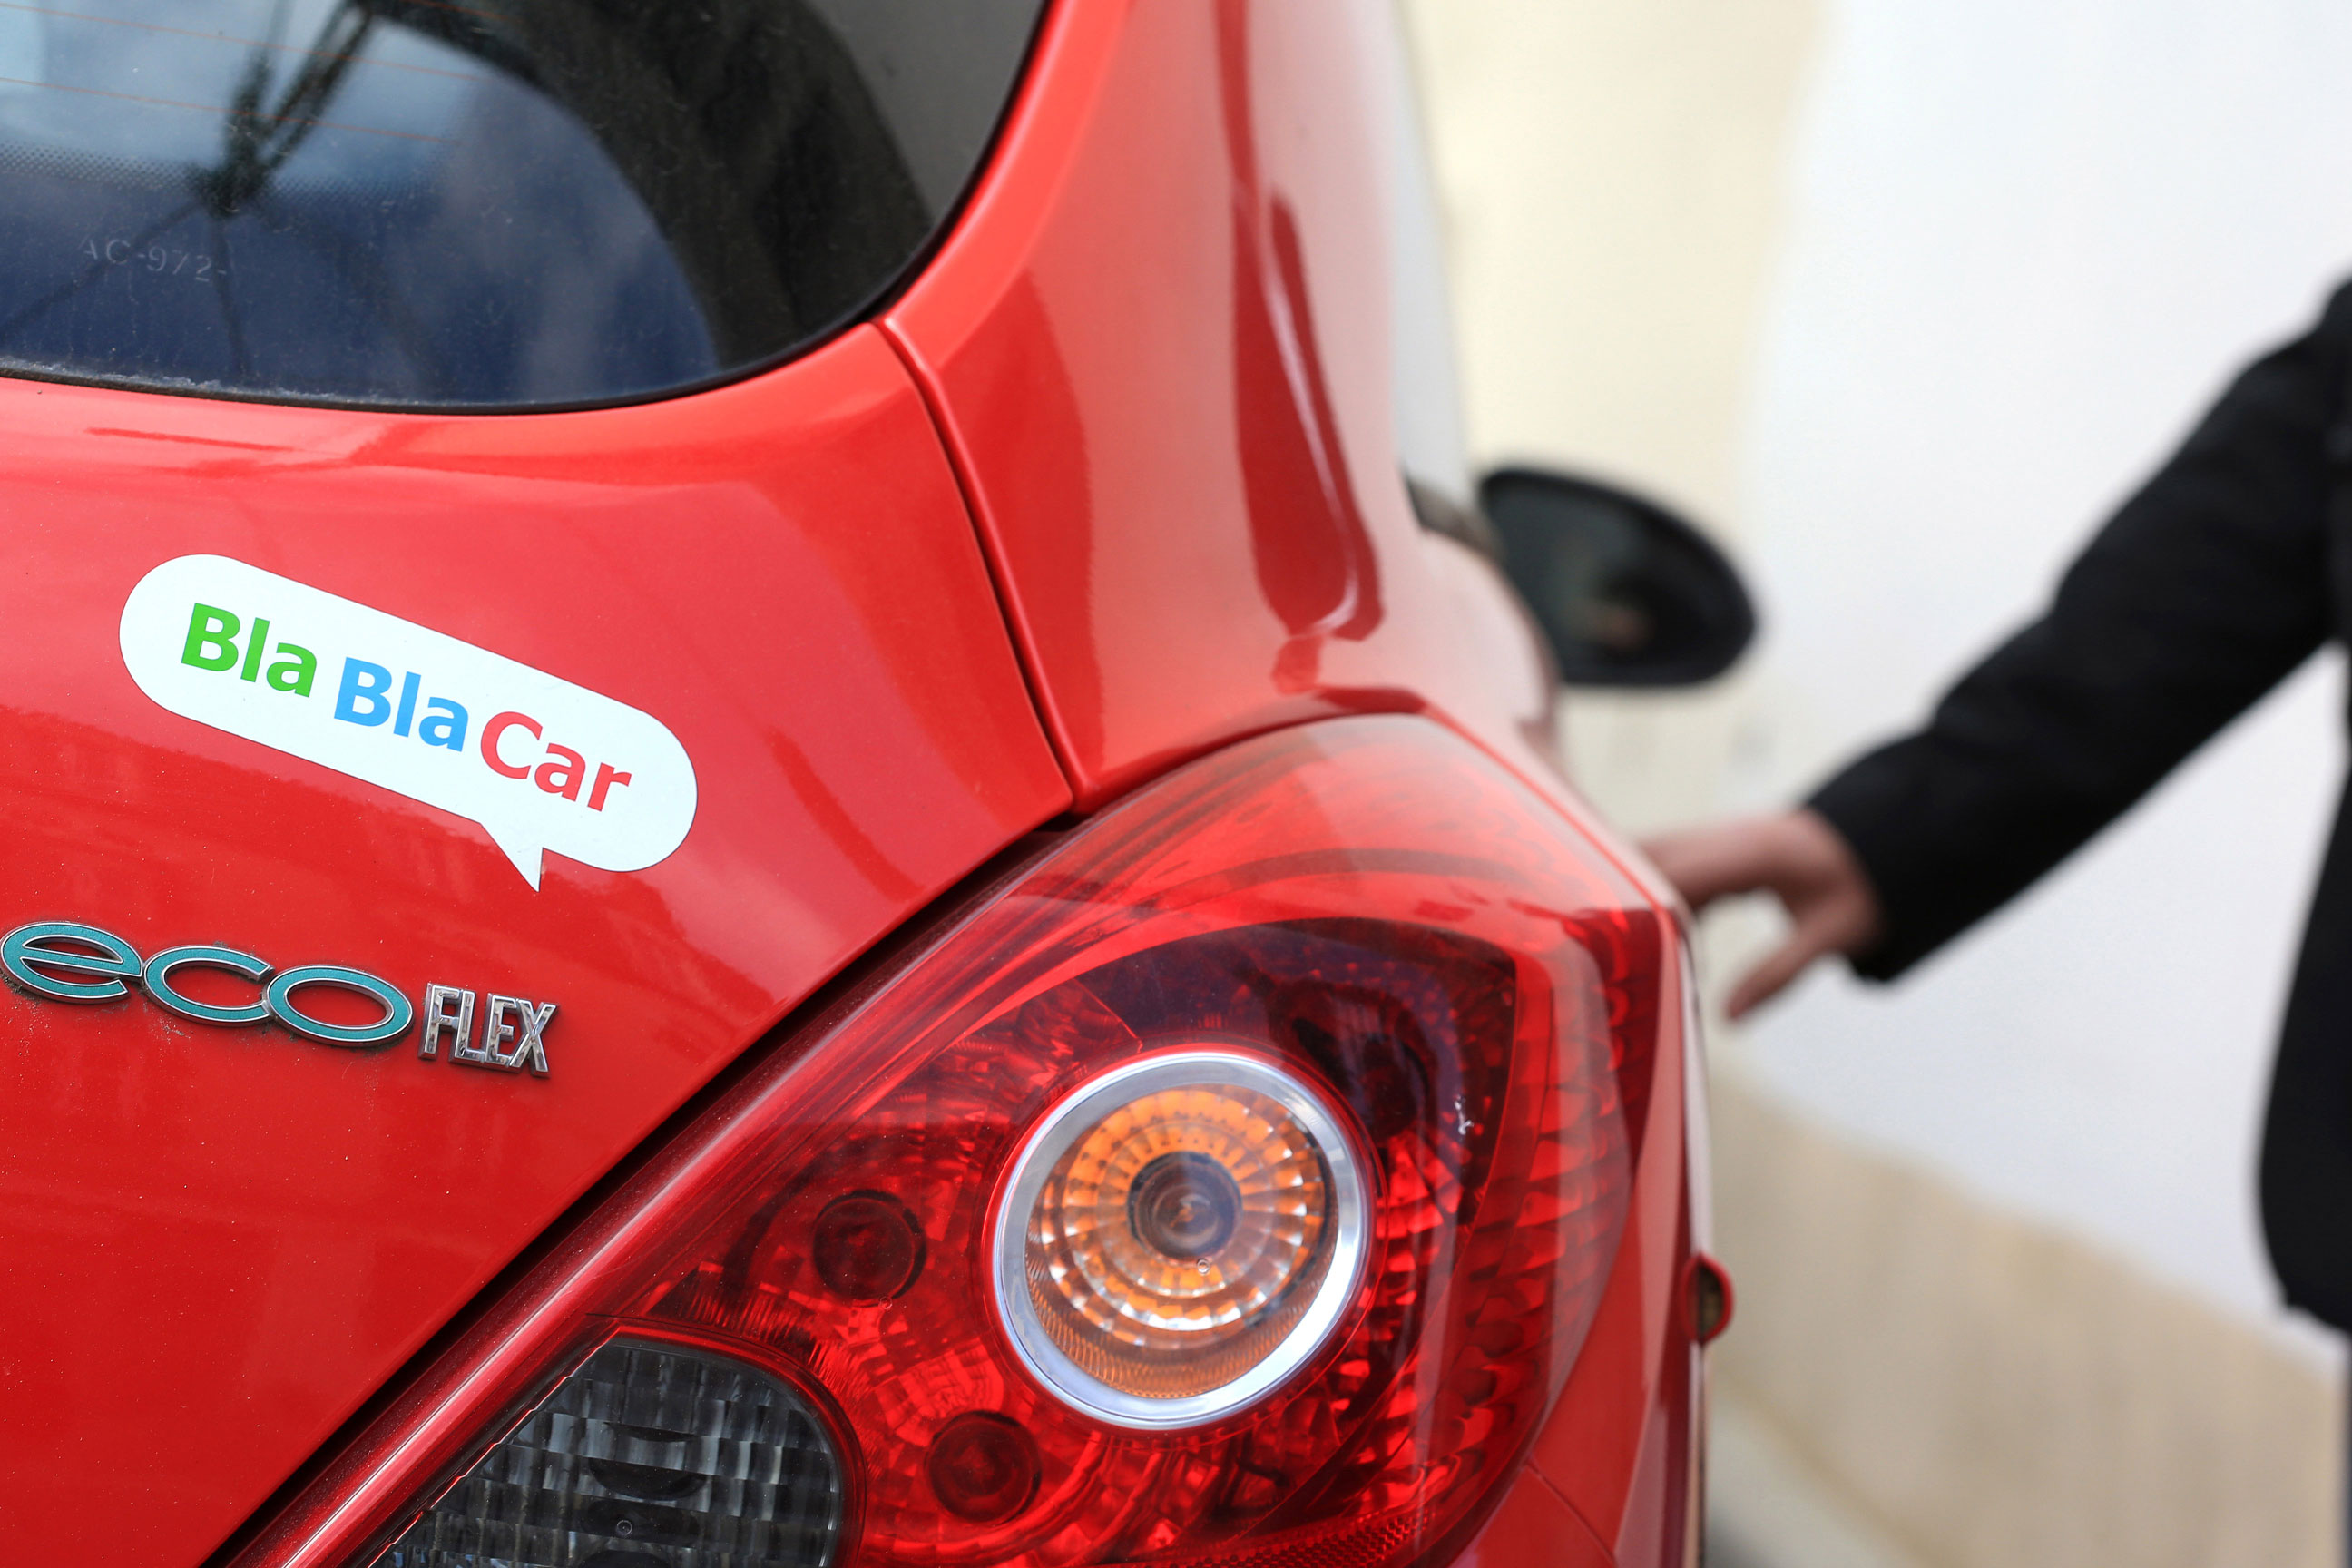 BlaBlaCar-Aufkleber auf der Rückseite eines roten Autos.